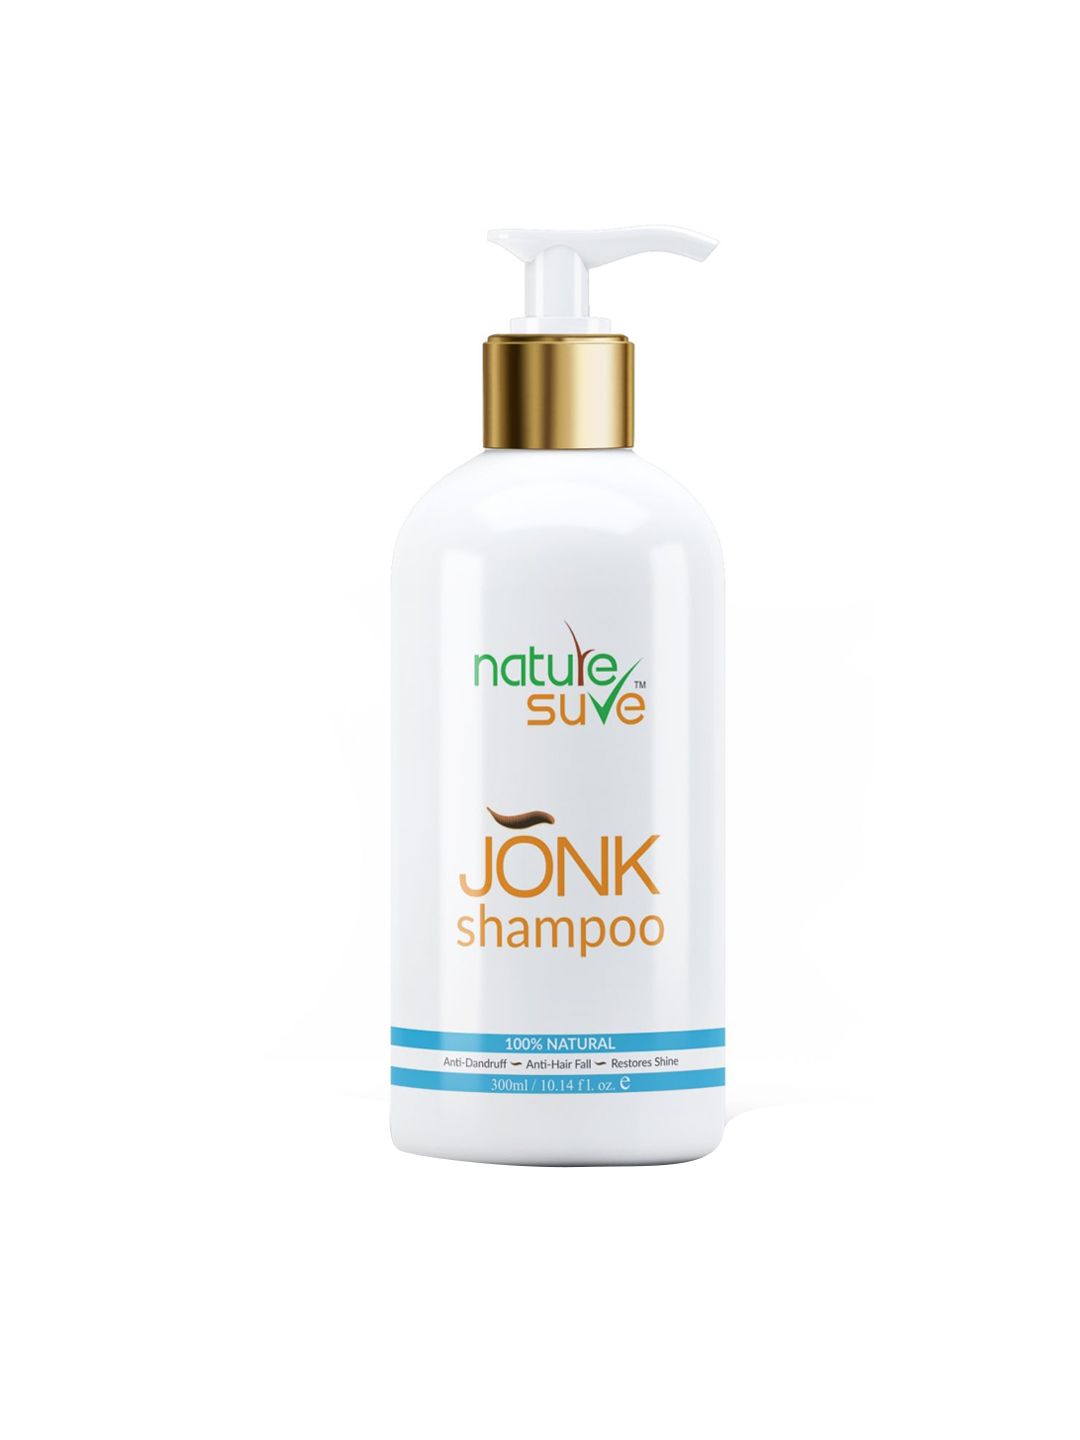 Nature Sure Jonk Hair Cleanser Anti Dandruff Shampoo - 300 ml Price in India